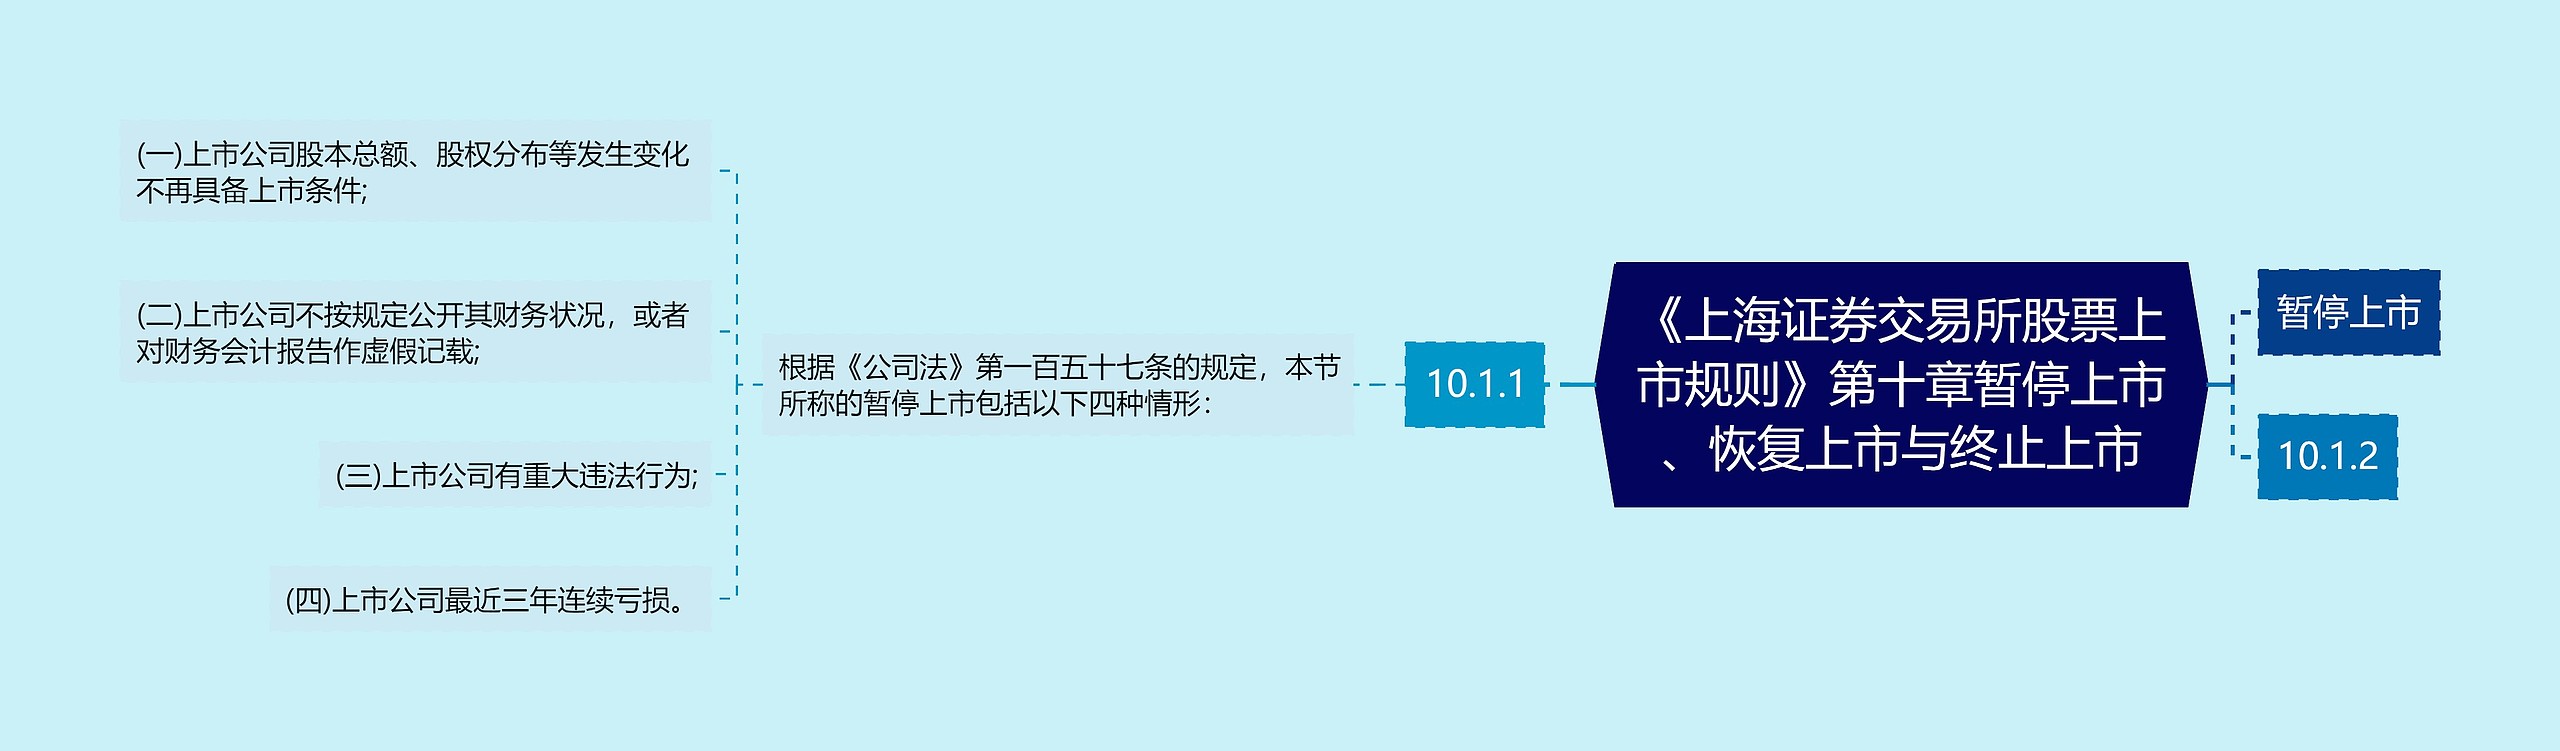 《上海证券交易所股票上市规则》第十章暂停上市、恢复上市与终止上市思维导图